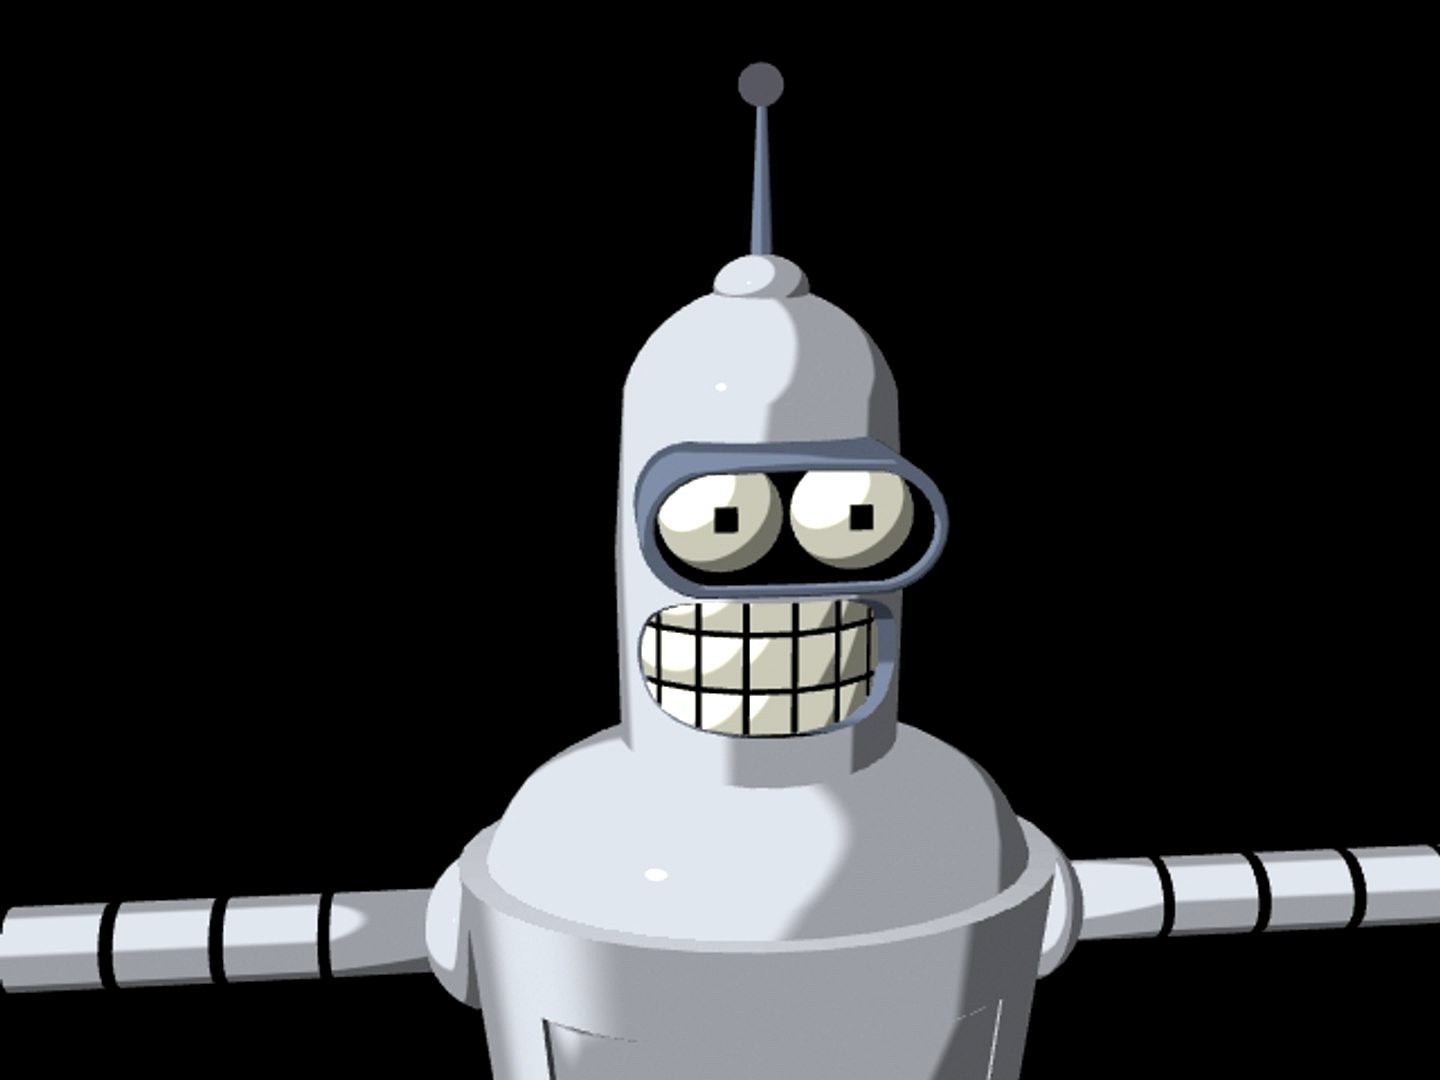 Bender Robot from Futurama